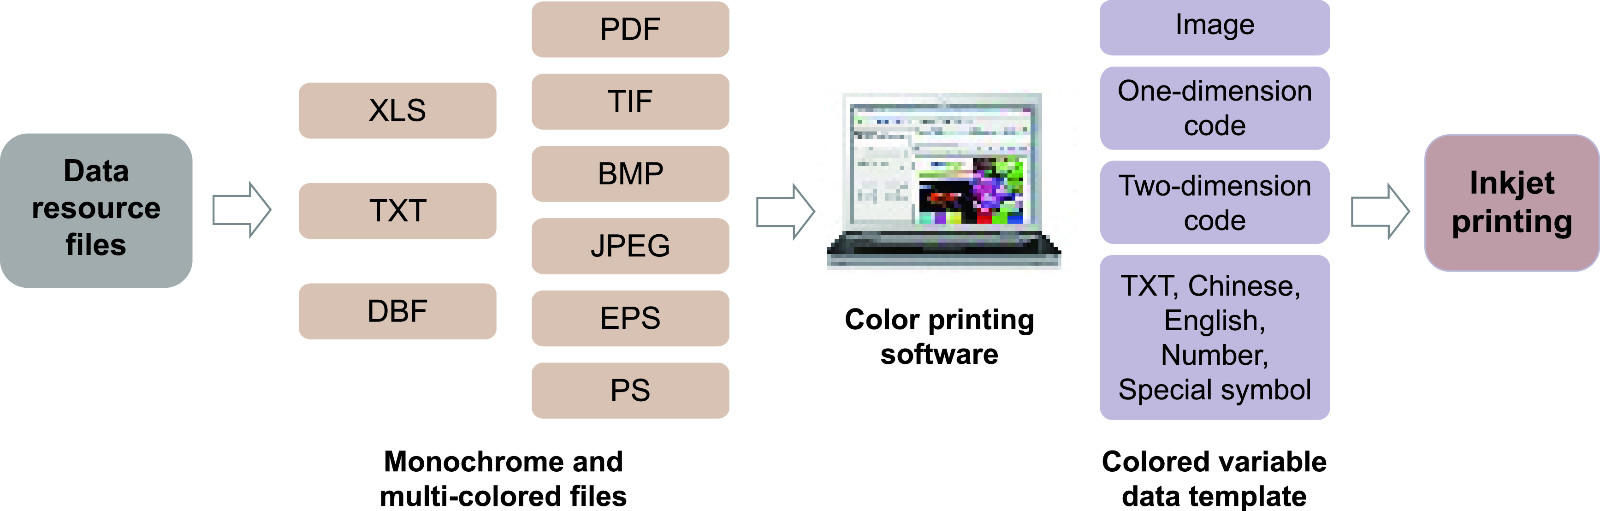 Arojet high speed color inkjet printer manufacturer for packaging